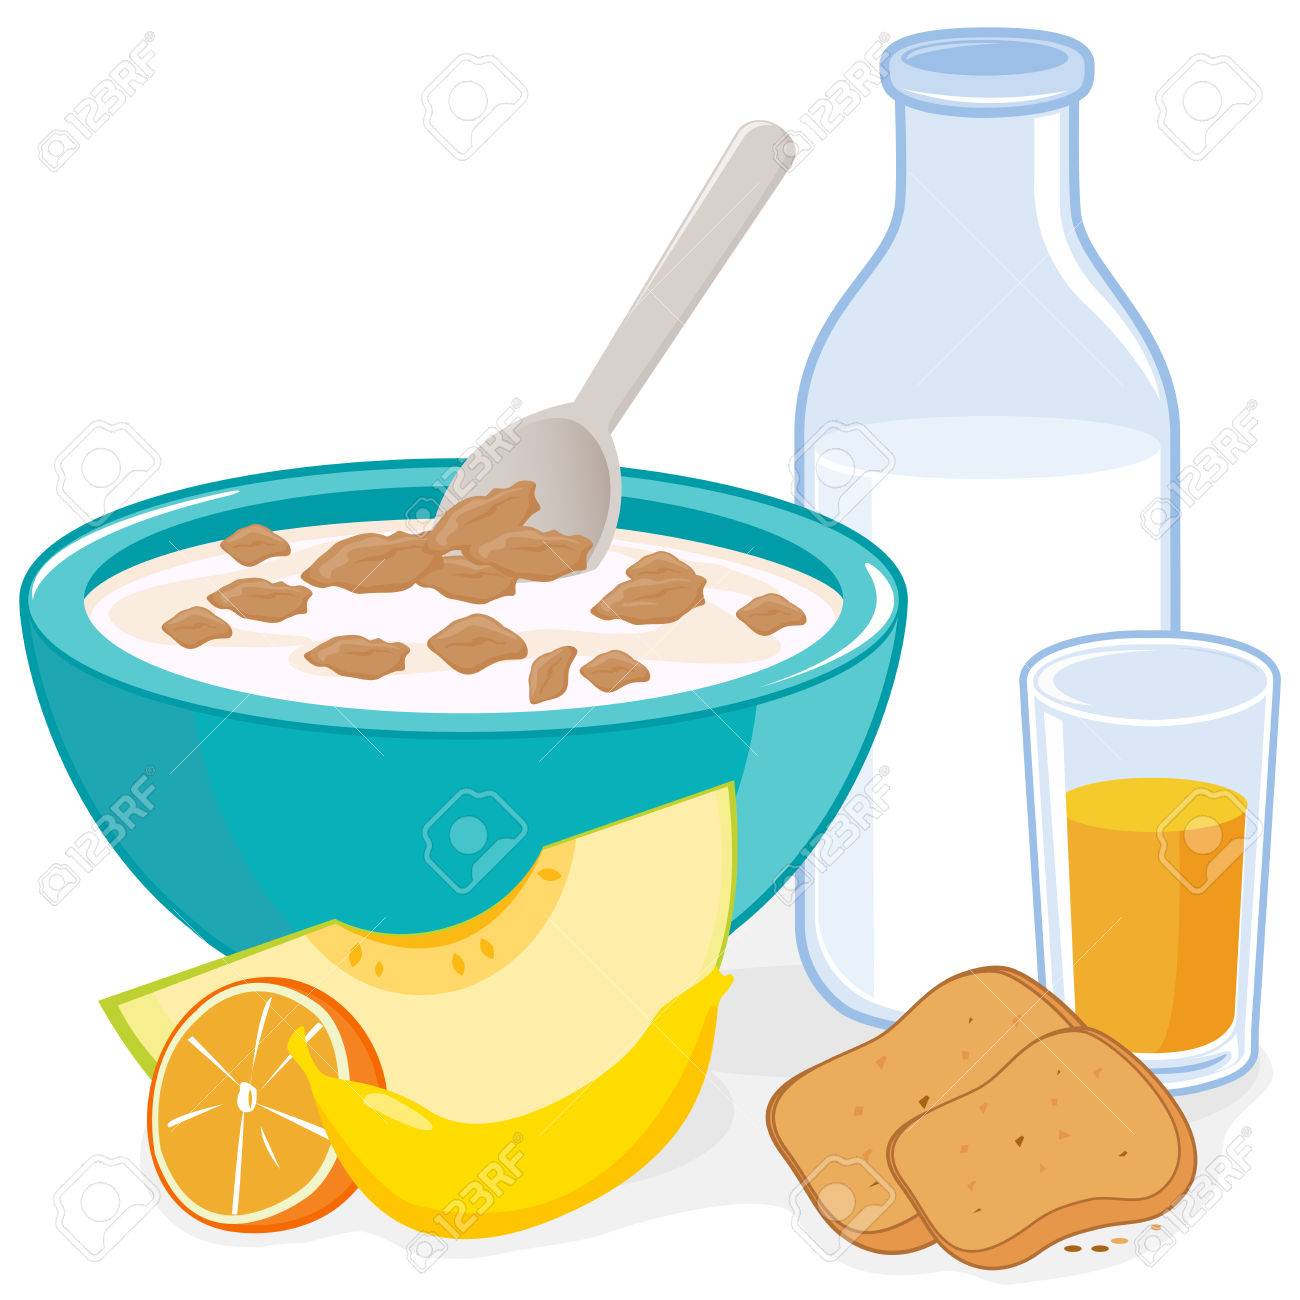 Desayuno. Un tazón de cereales, botella de leche, zumo, tostadas y frutas.